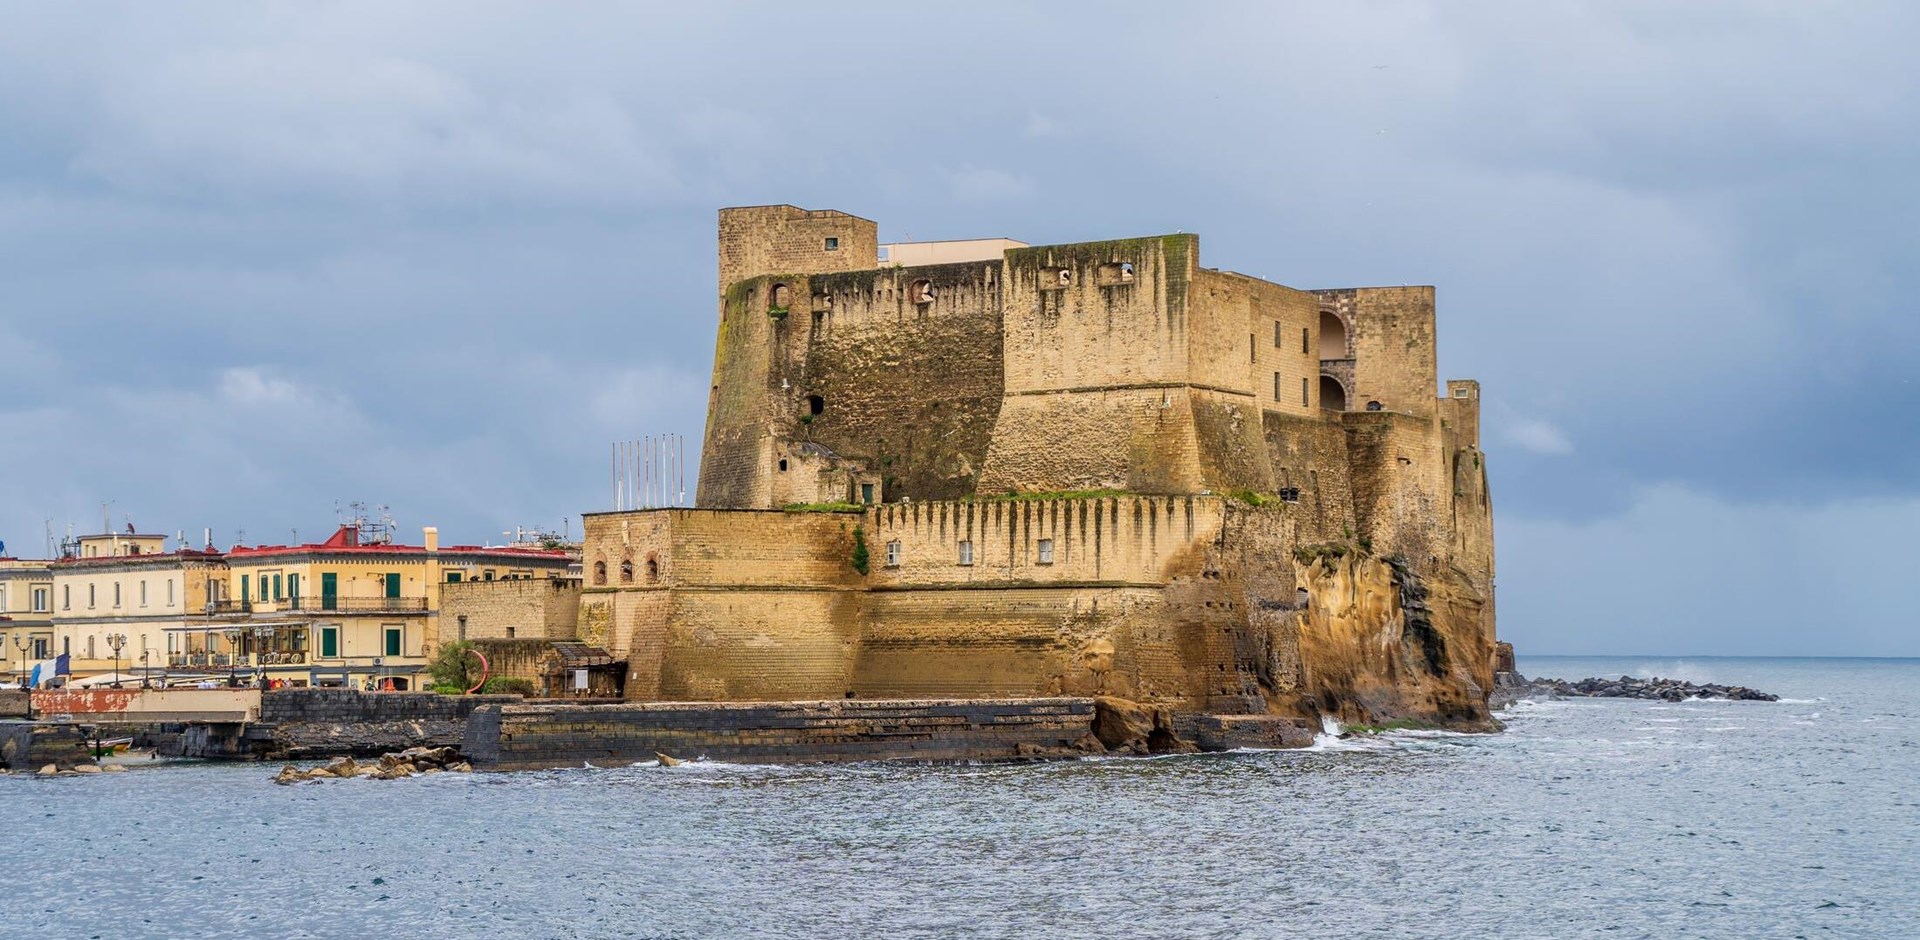 The Castel dell'Ovo view in Napoli, Italy